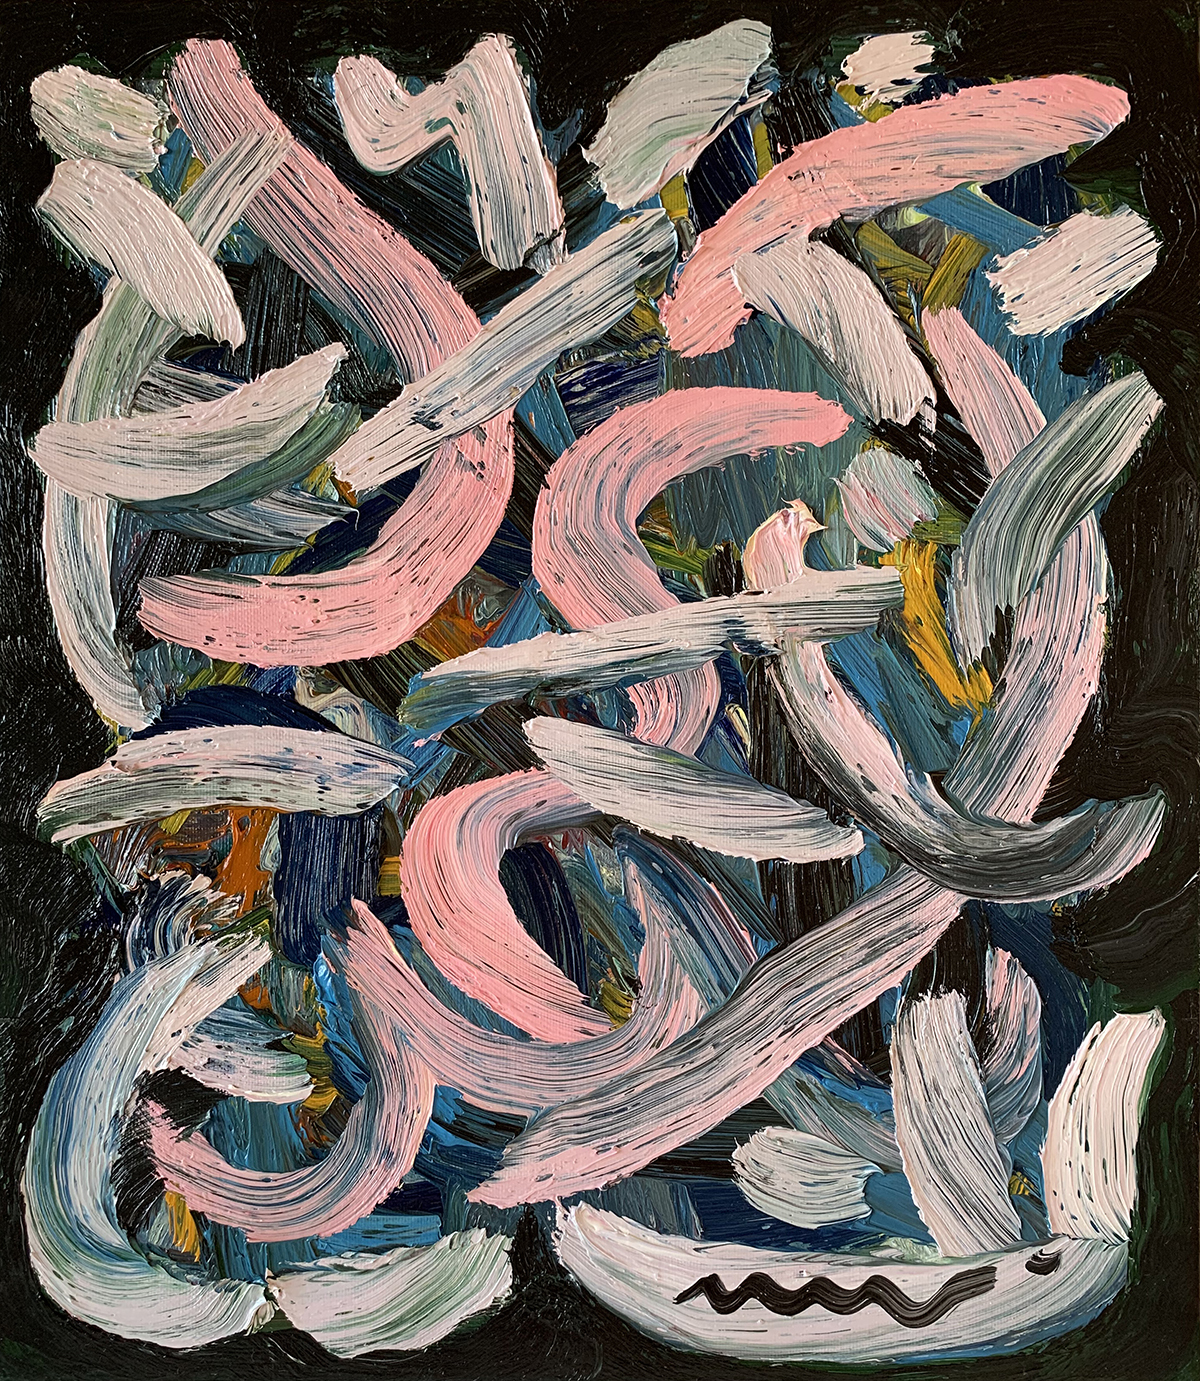 Composition IV, Oil on Canvas, 40х35 cm. 2019